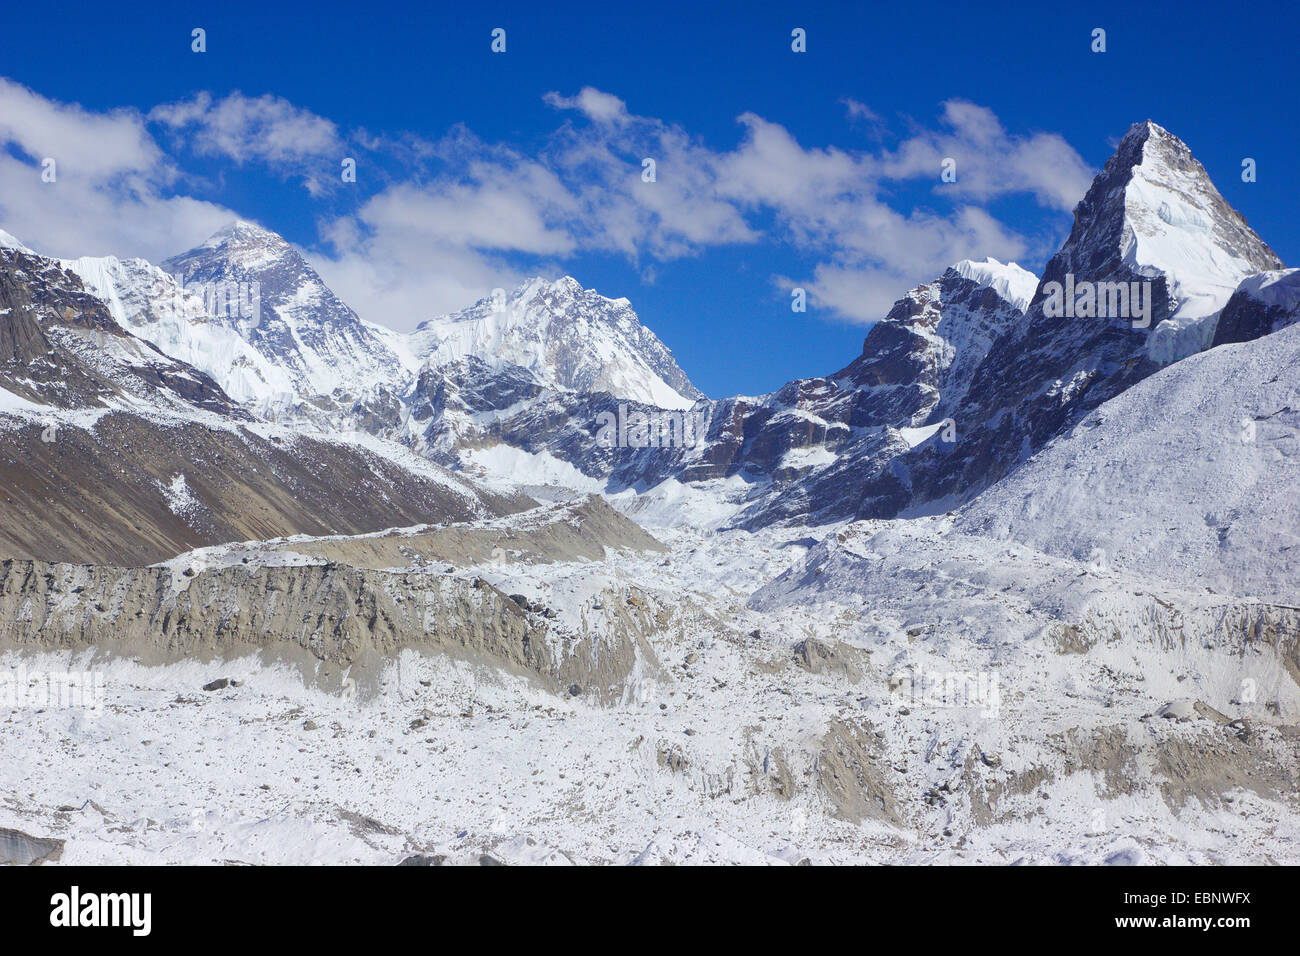 Le mont Everest, Nuptse, Nirekha Kangchung, (est). Devant le glacier Ngozumba, vue à partir de la 5ème lac près de Gokyo, Népal, Himalaya, Khumbu Himal Banque D'Images